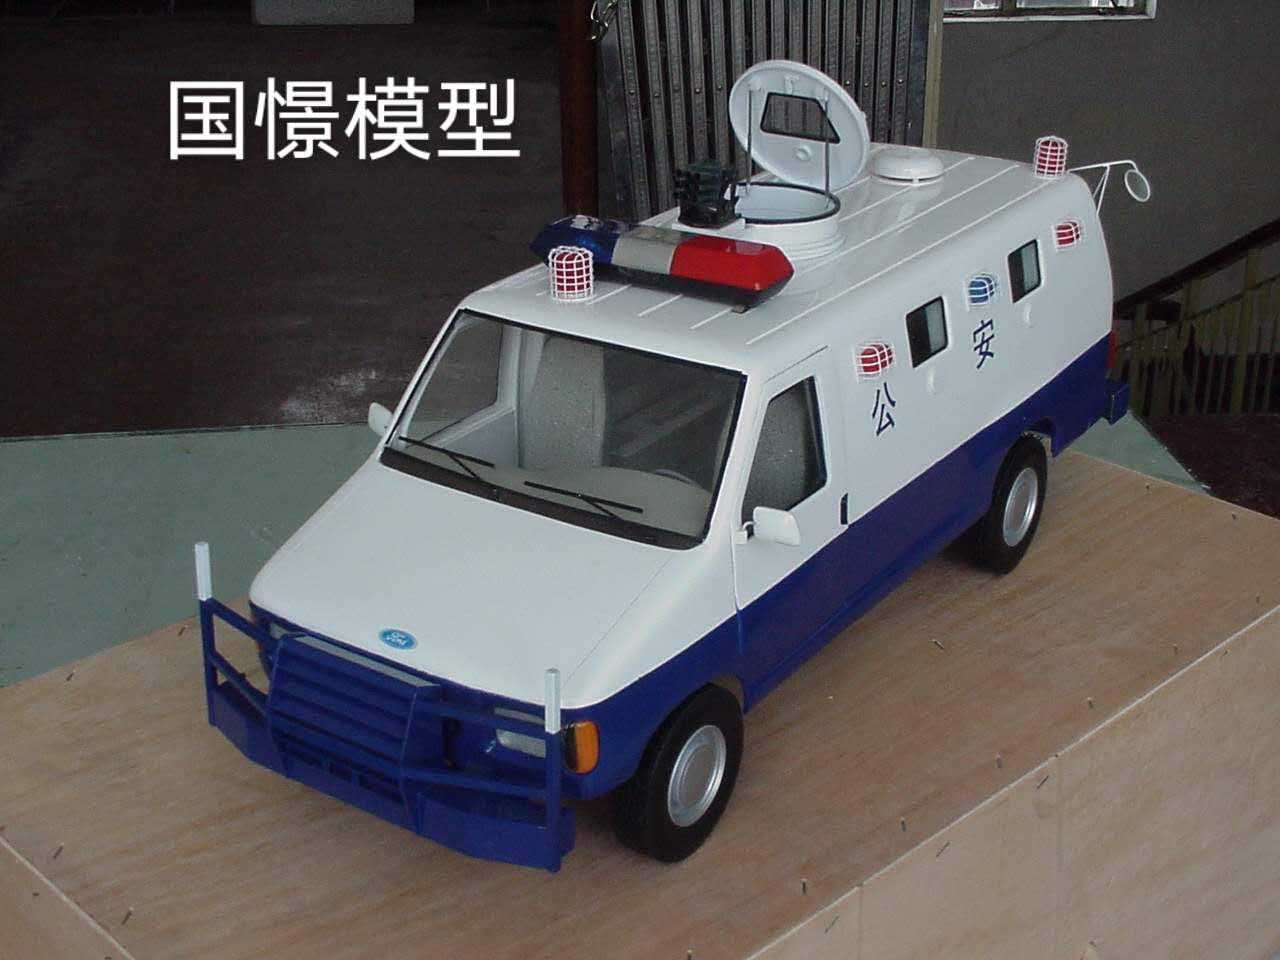 会泽县车辆模型